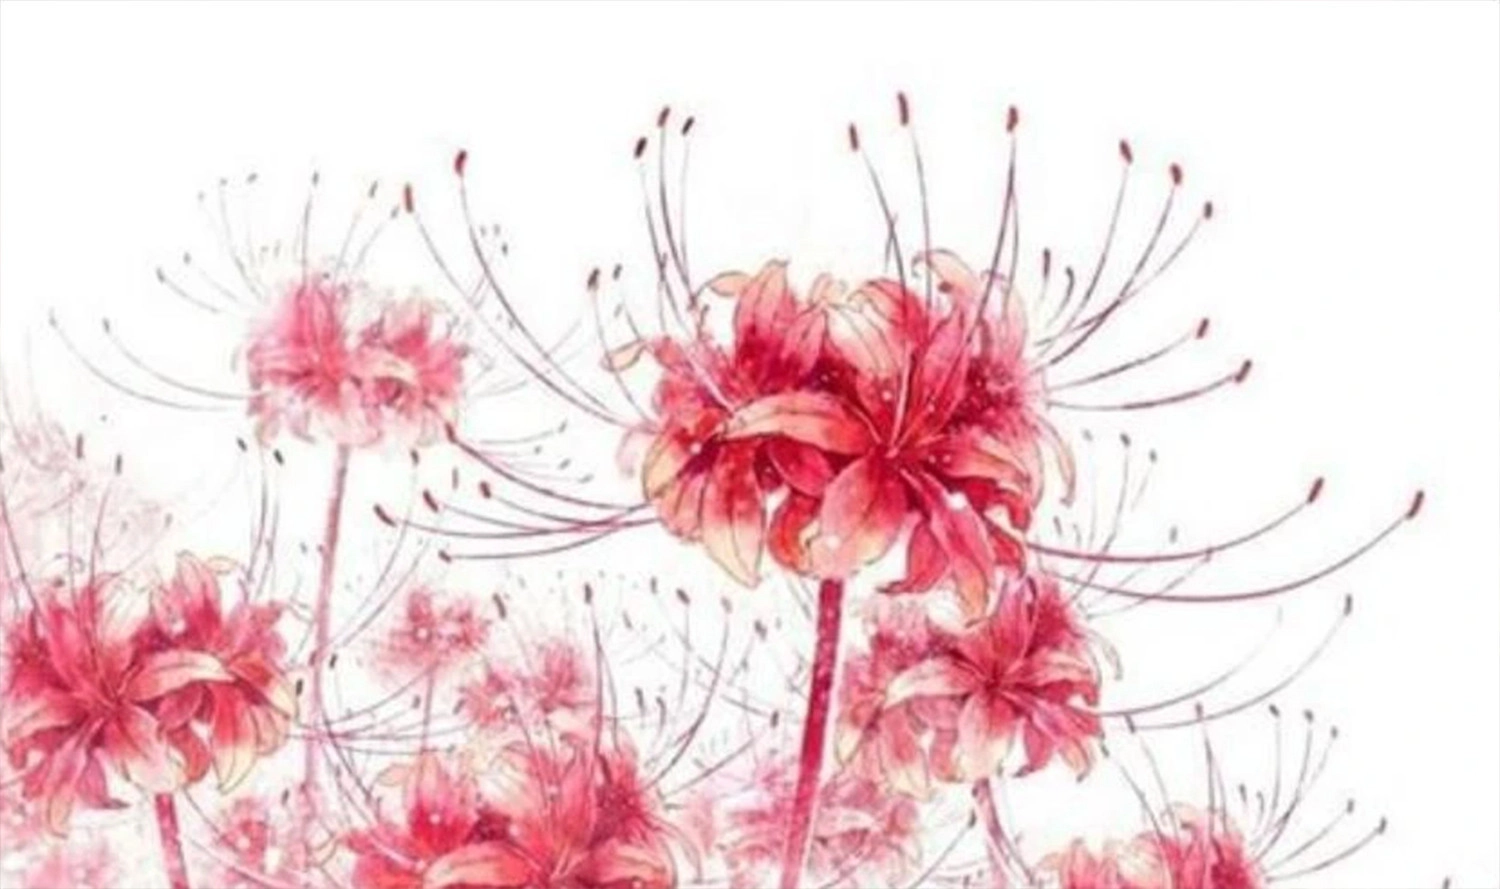  Hình nền tranh vẽ hoa bỉ ngạn đỏ tải cho máy tính